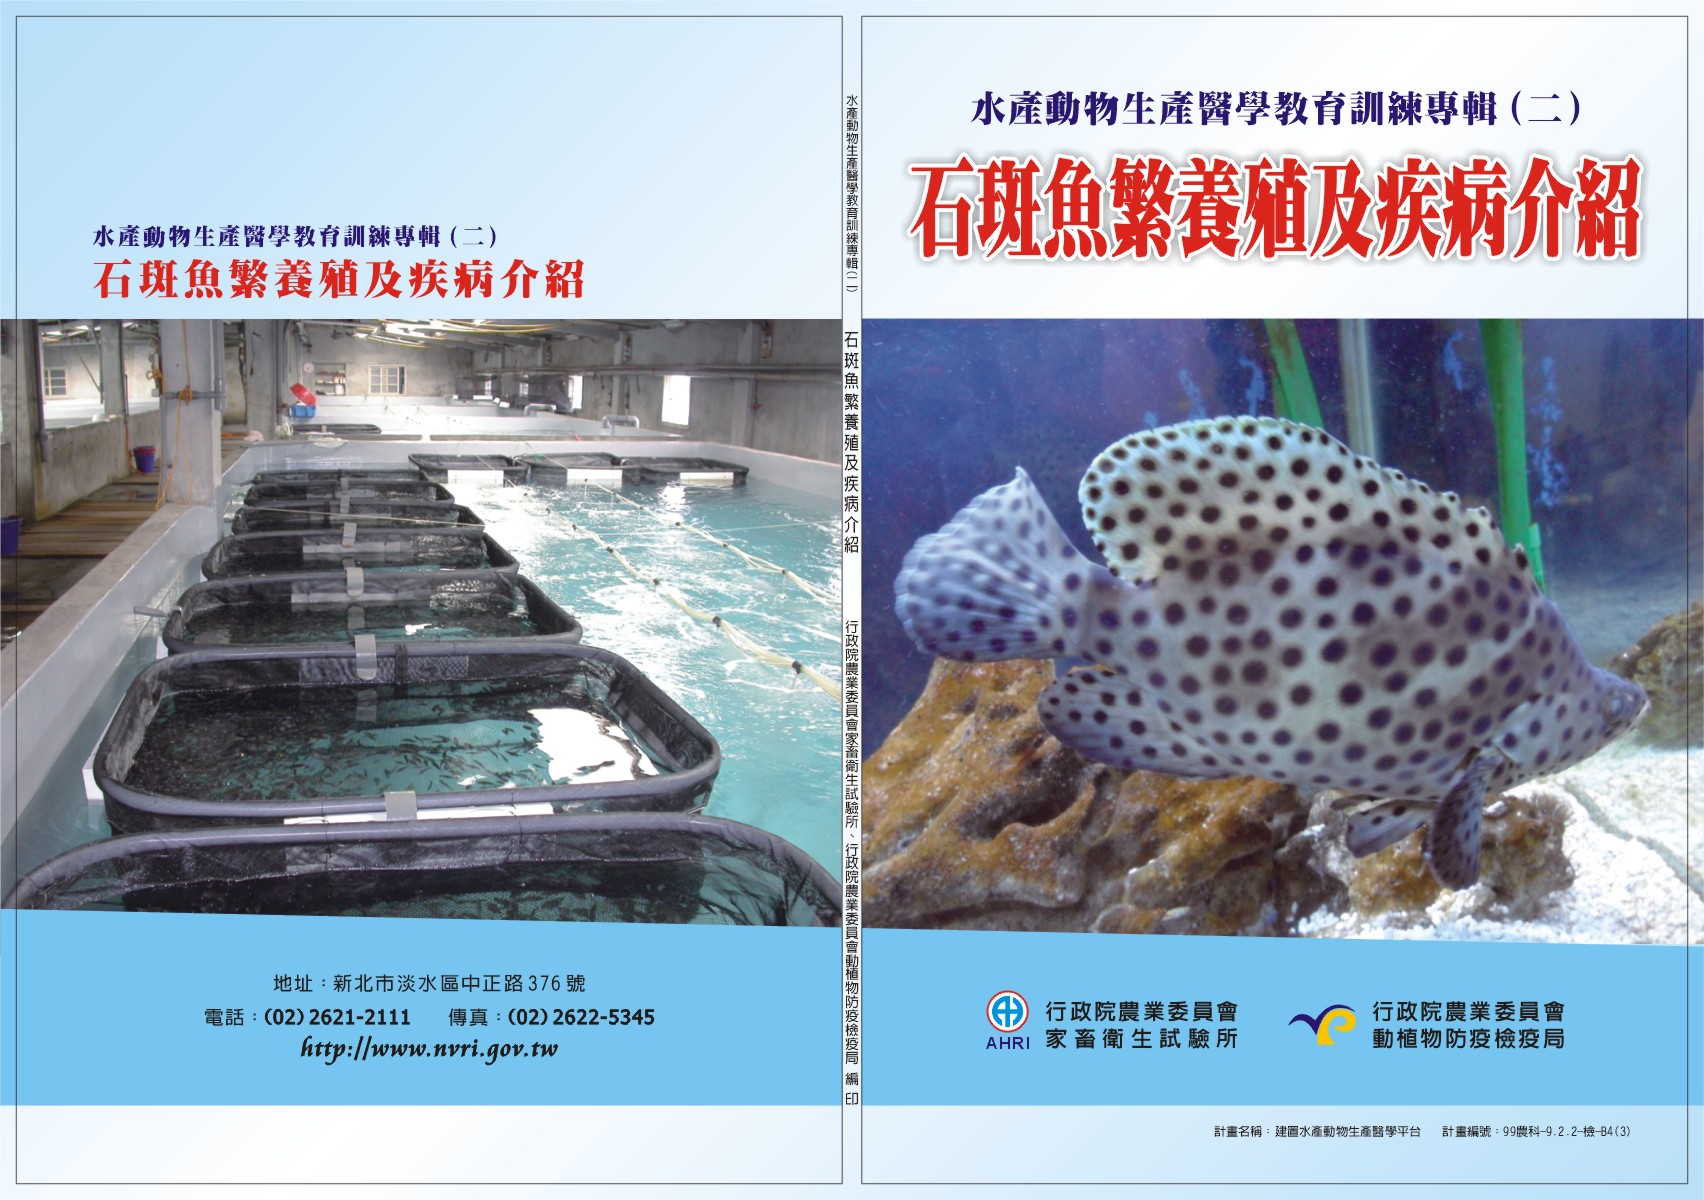 水產動物生產醫學教育訓練專輯(2)石斑魚繁養殖及疾病介紹